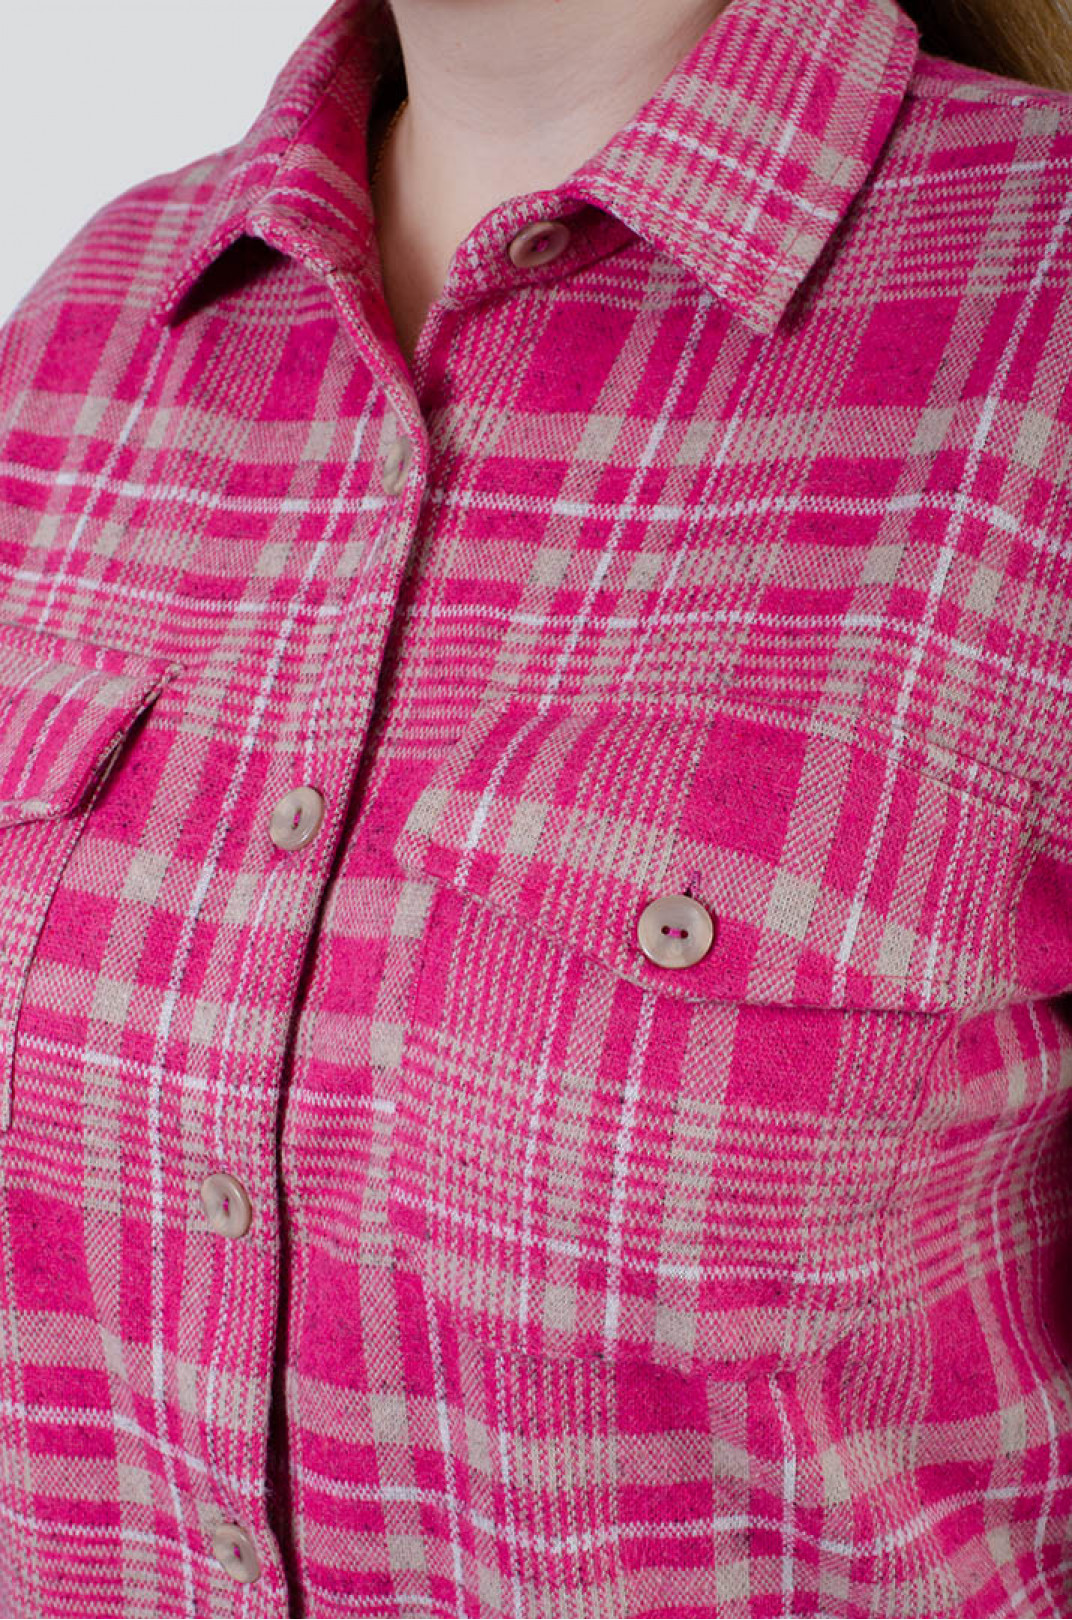 Рубашка байковая в принт с карманами супер батал